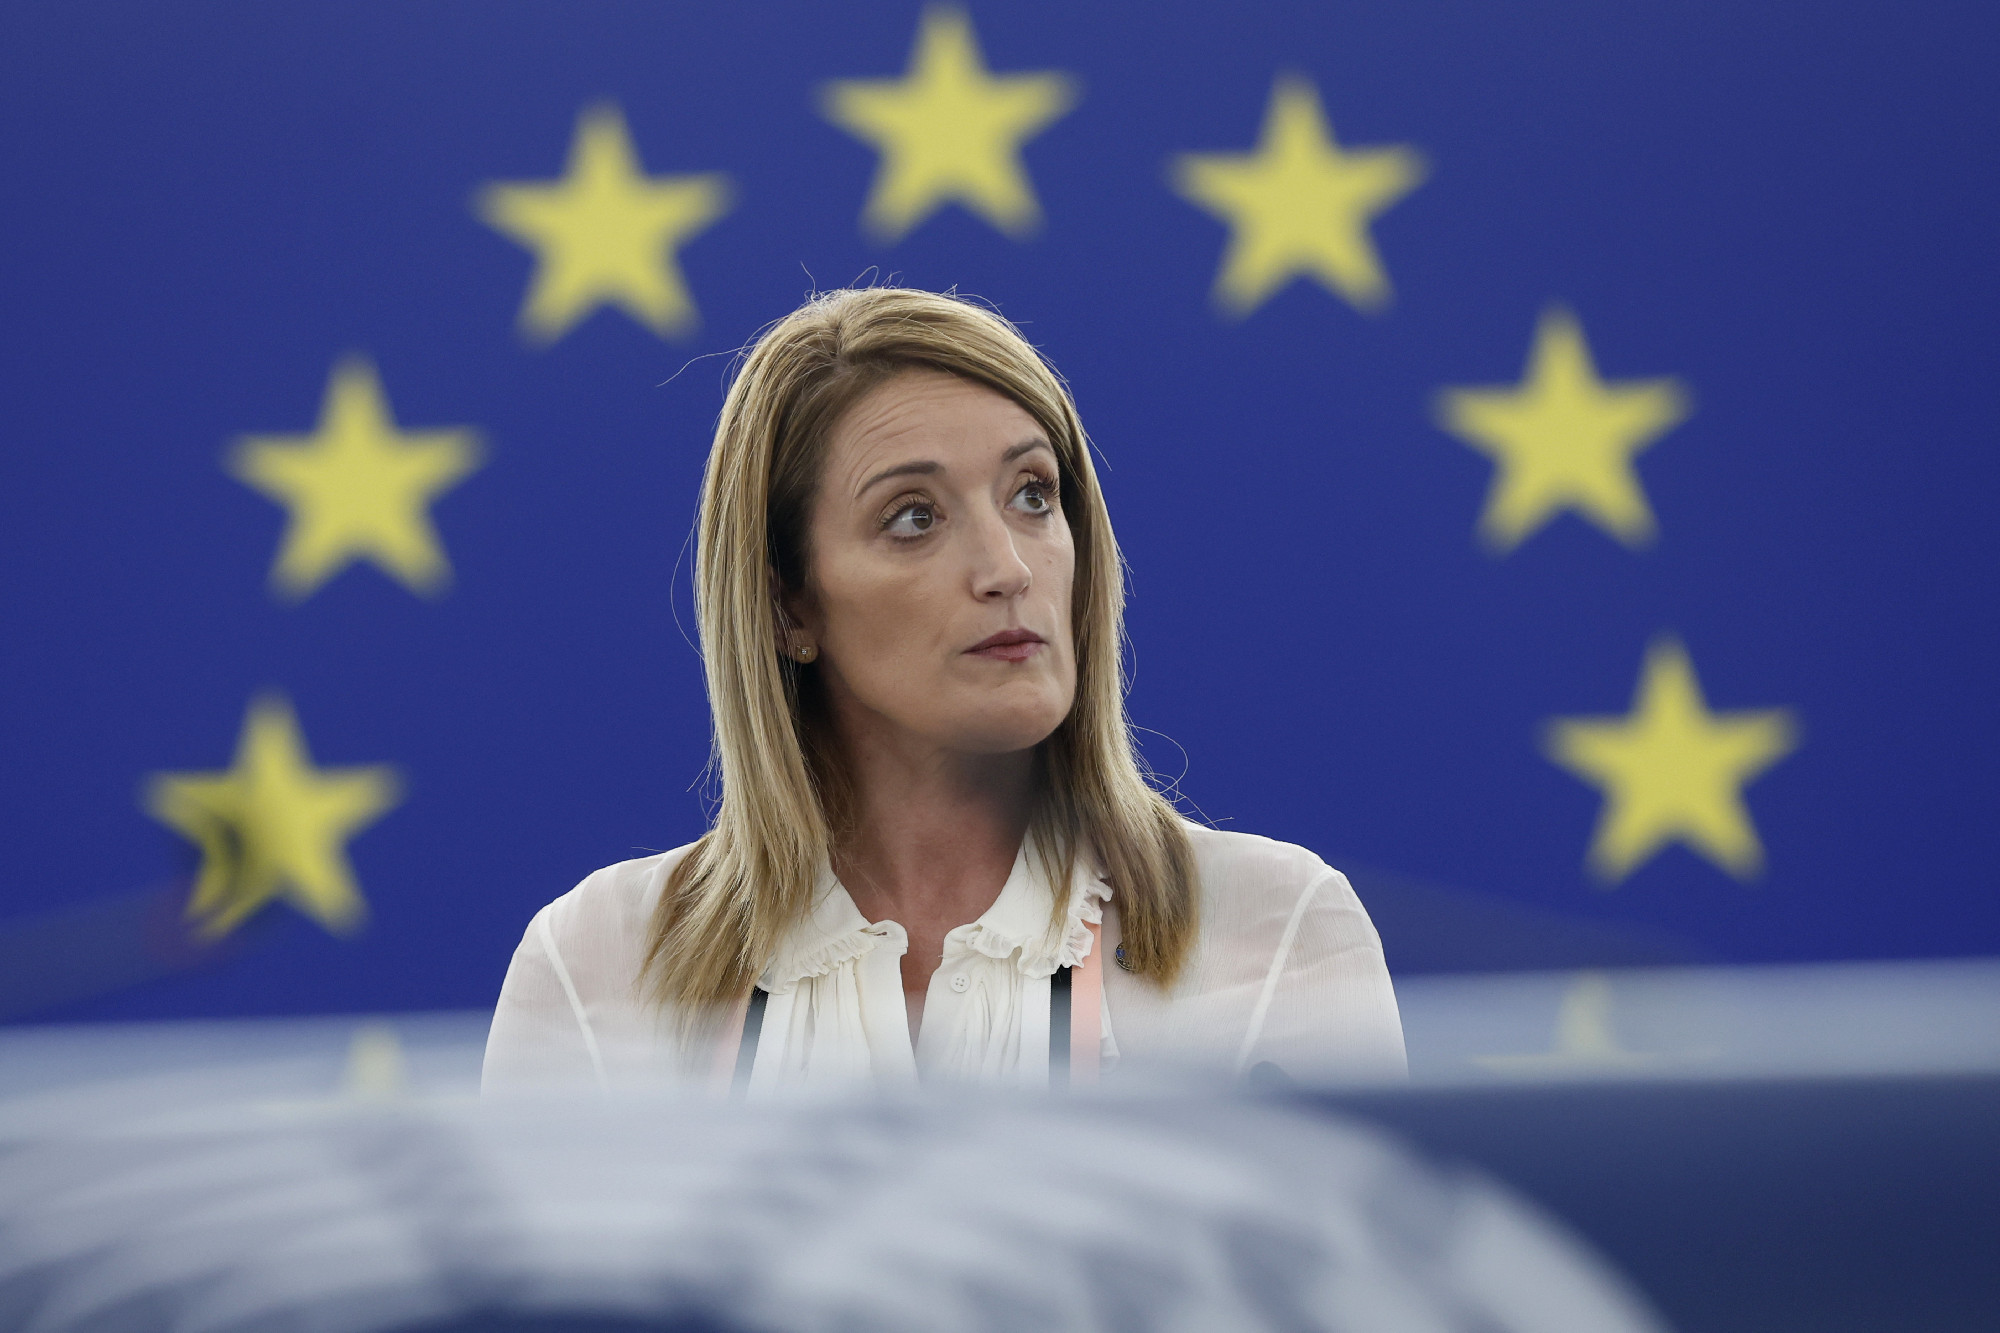 Az EP sürgősségi eljárást indít két képviselője mentelmi joga felfüggesztésére